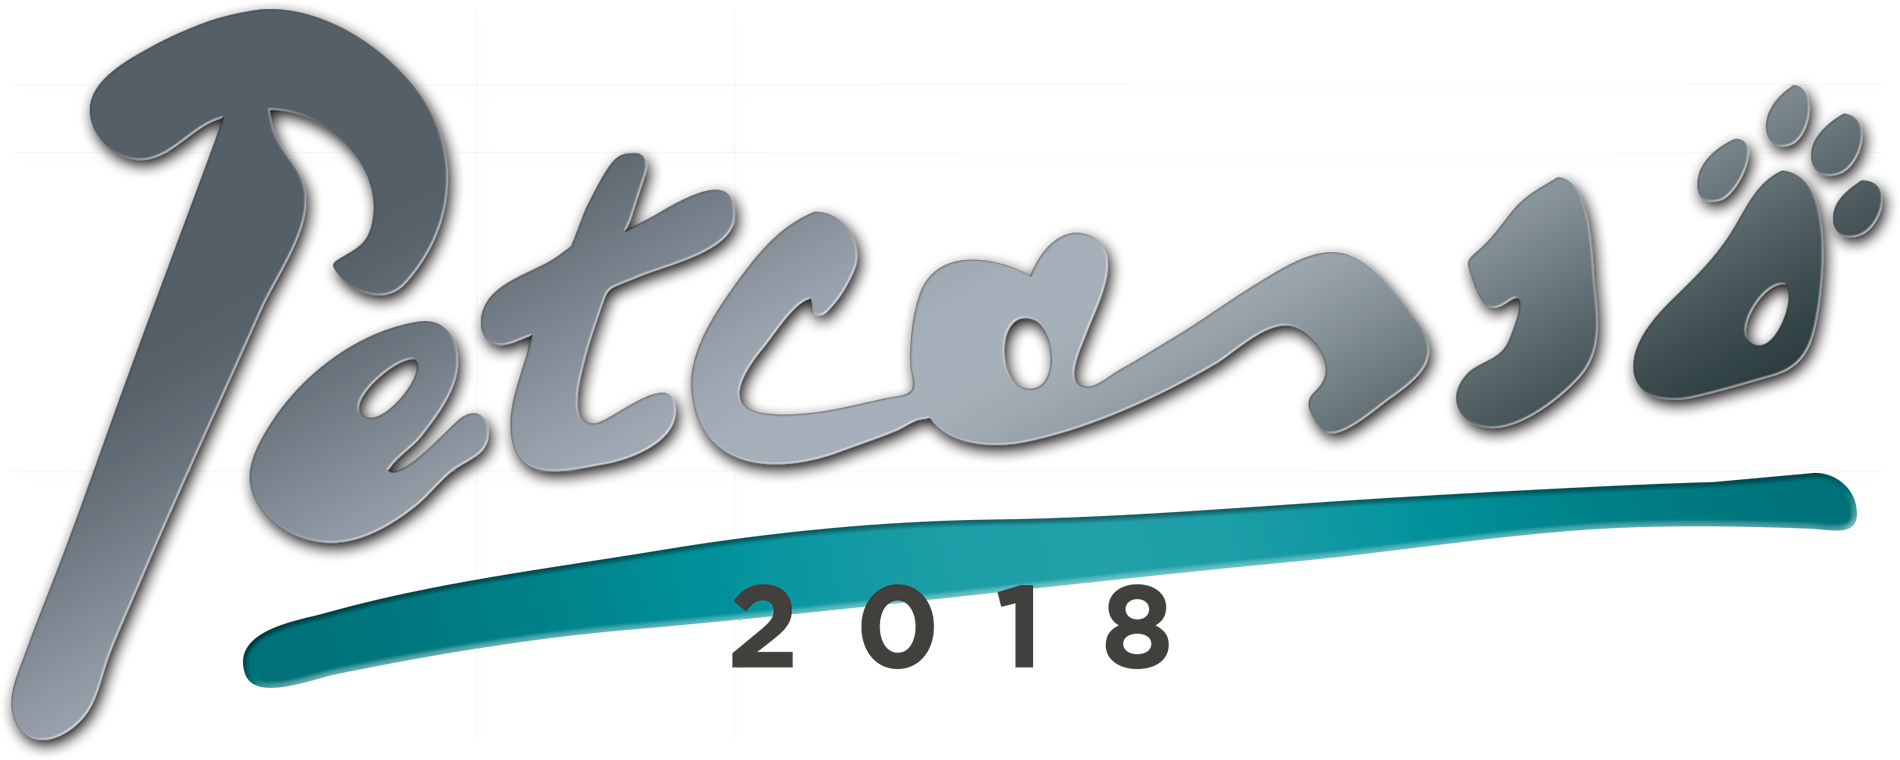 petcasso2018-logo-type